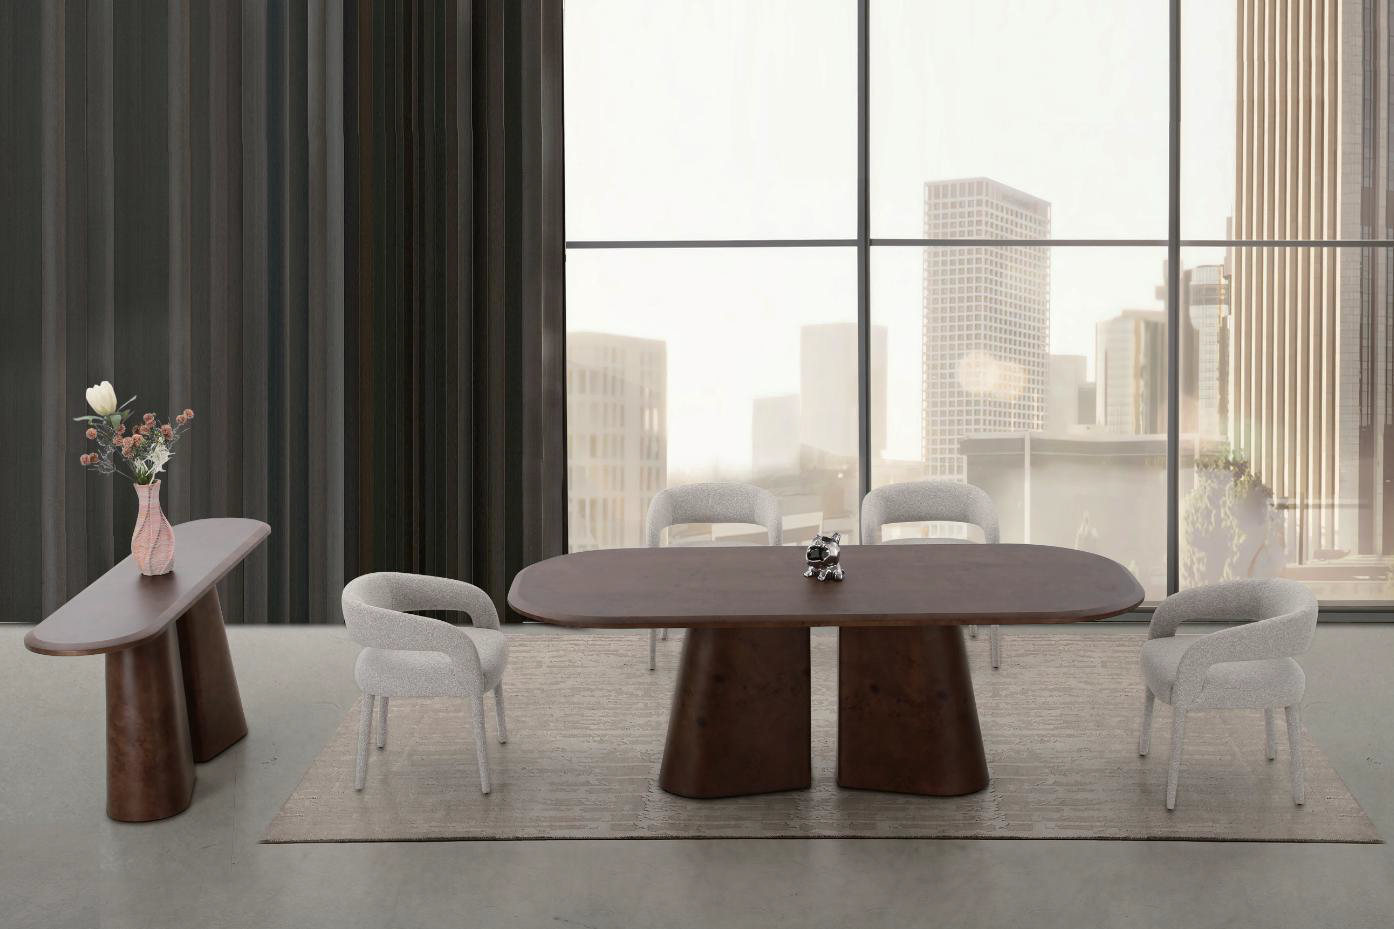 Vincentia Dining Table - 2.2m - Future Classics Furniture